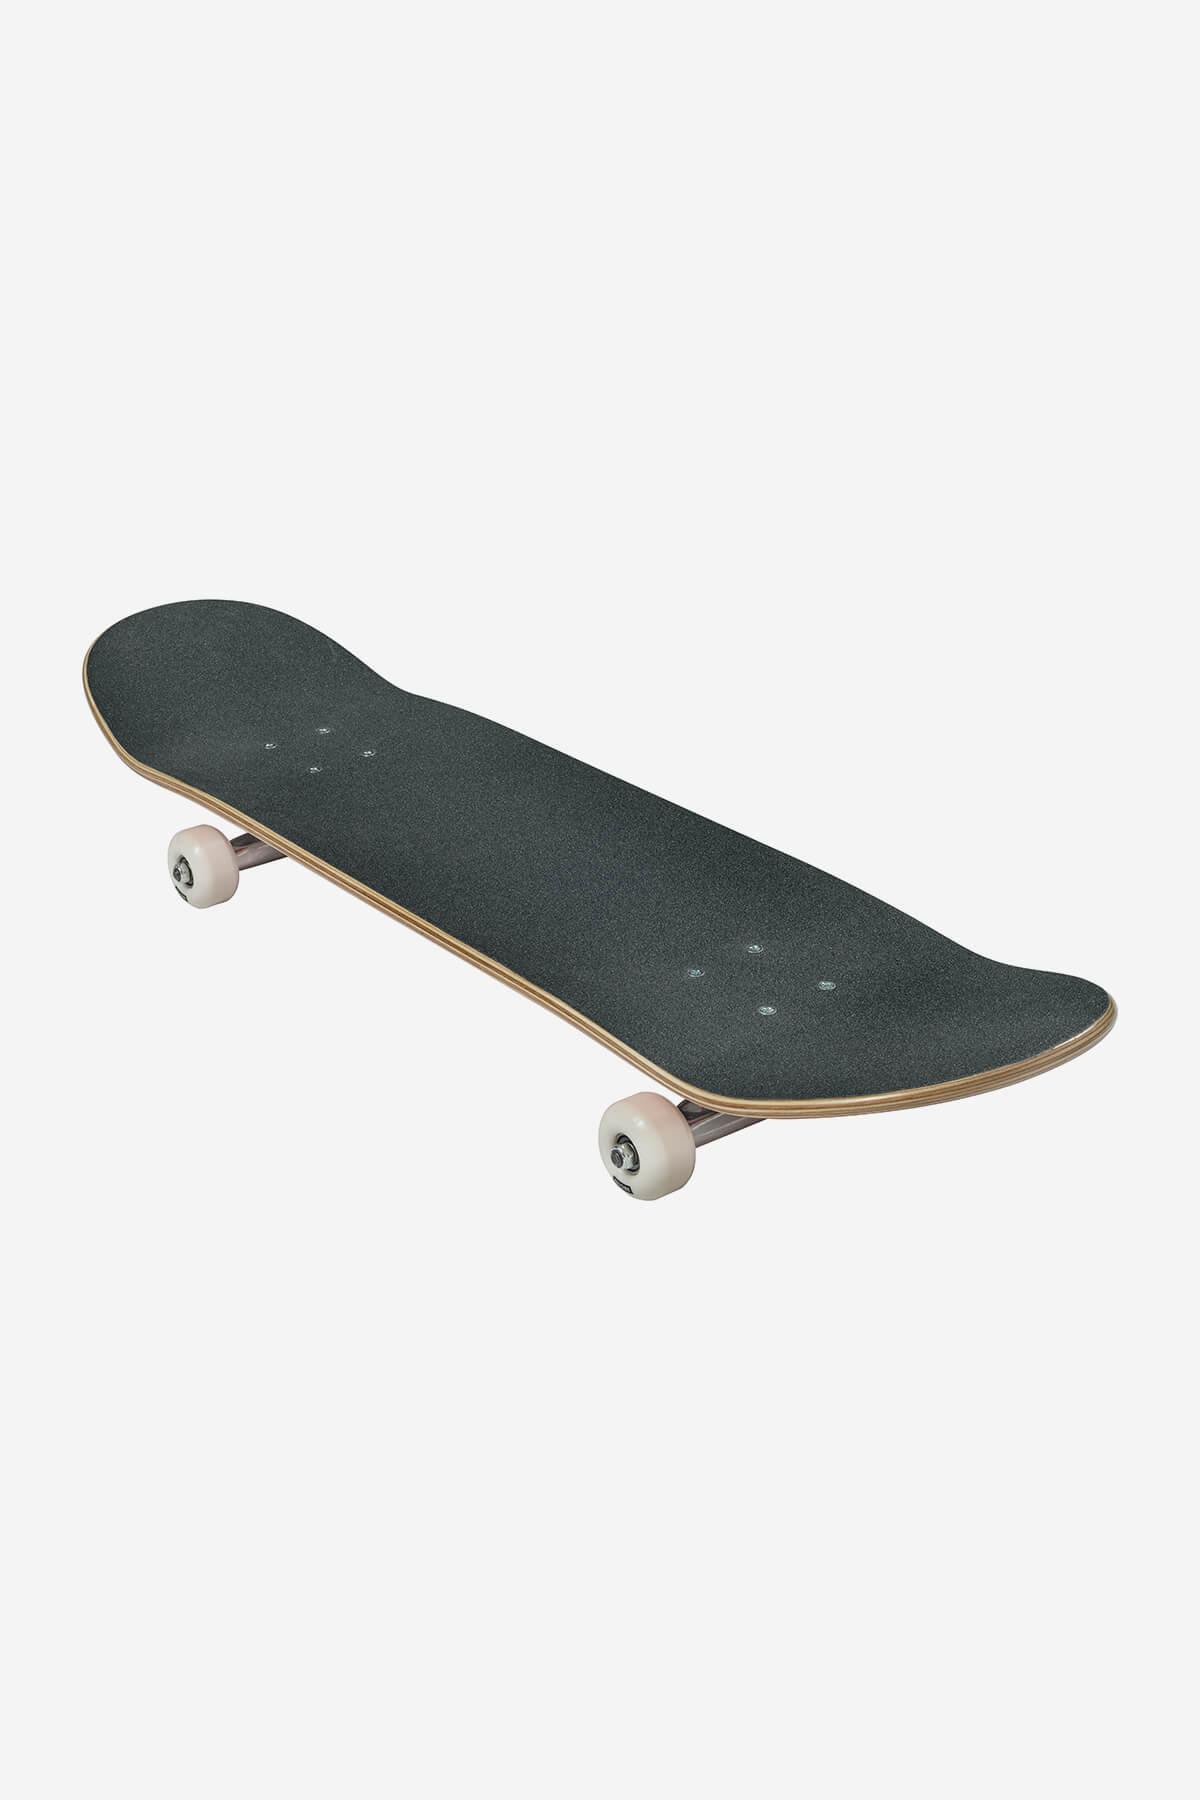 Globe - G0 Fubar - Red/White - 8.25" Komplett Skateboard